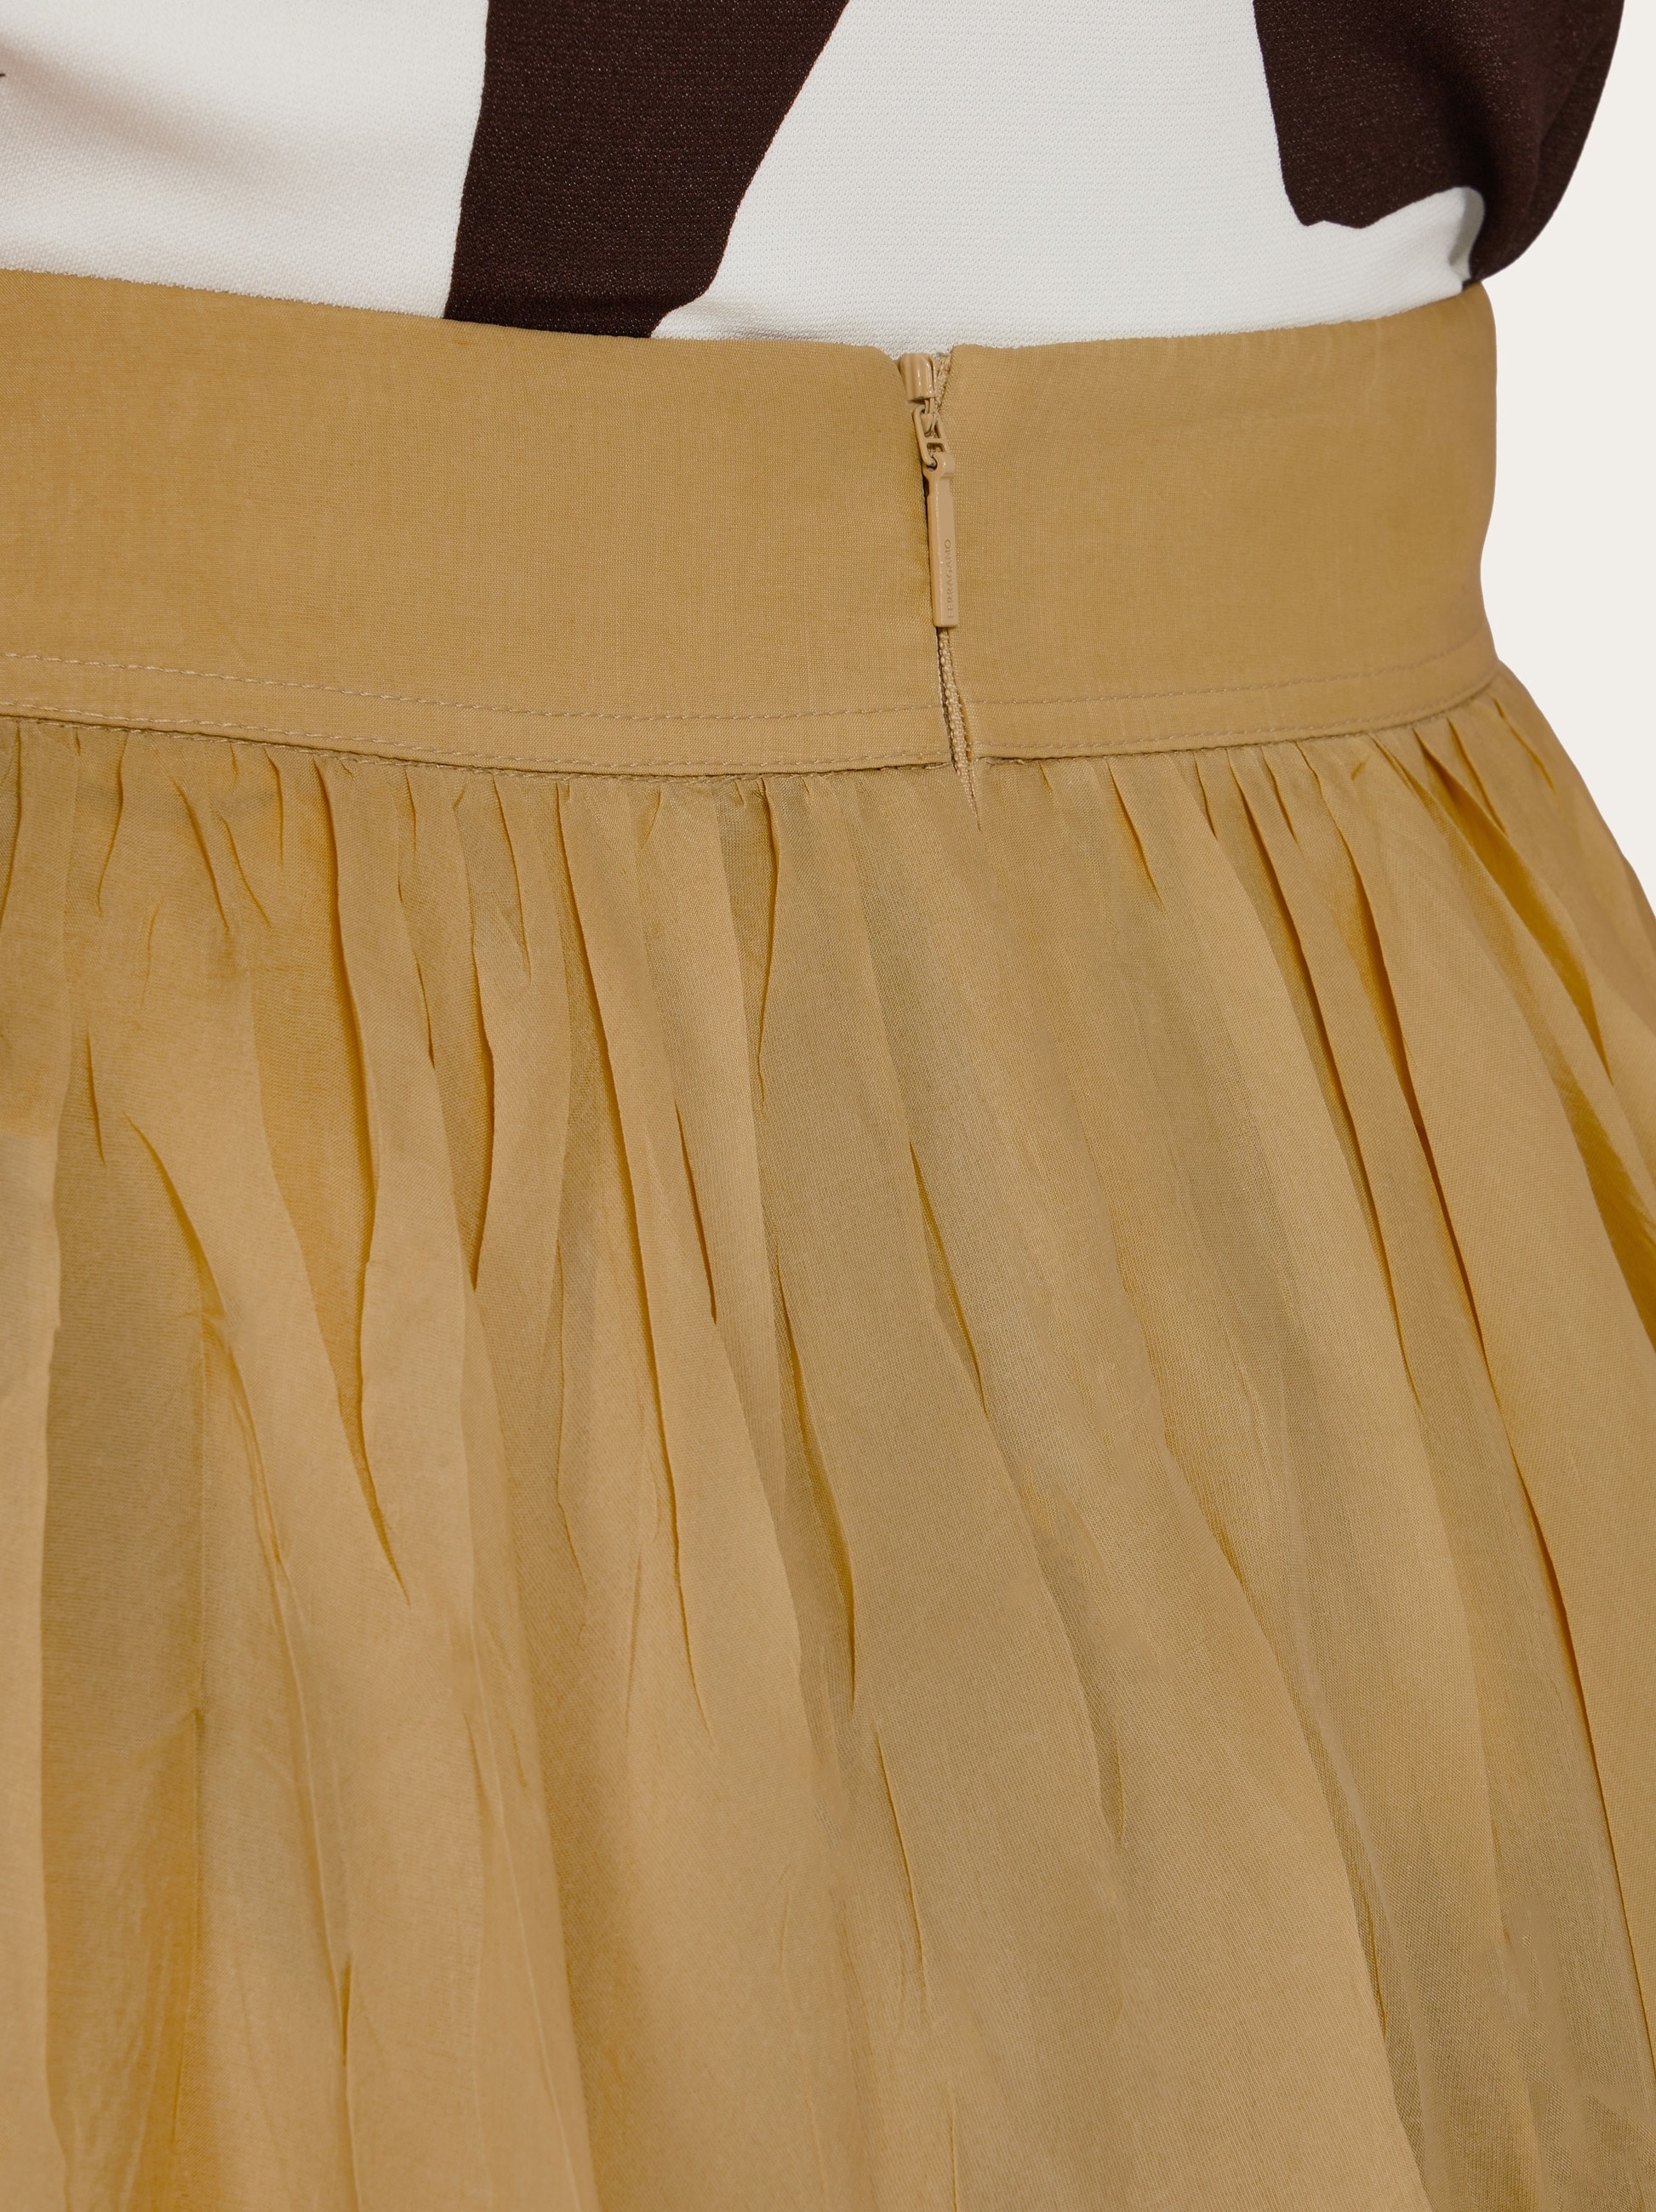 Layered skirt - 6